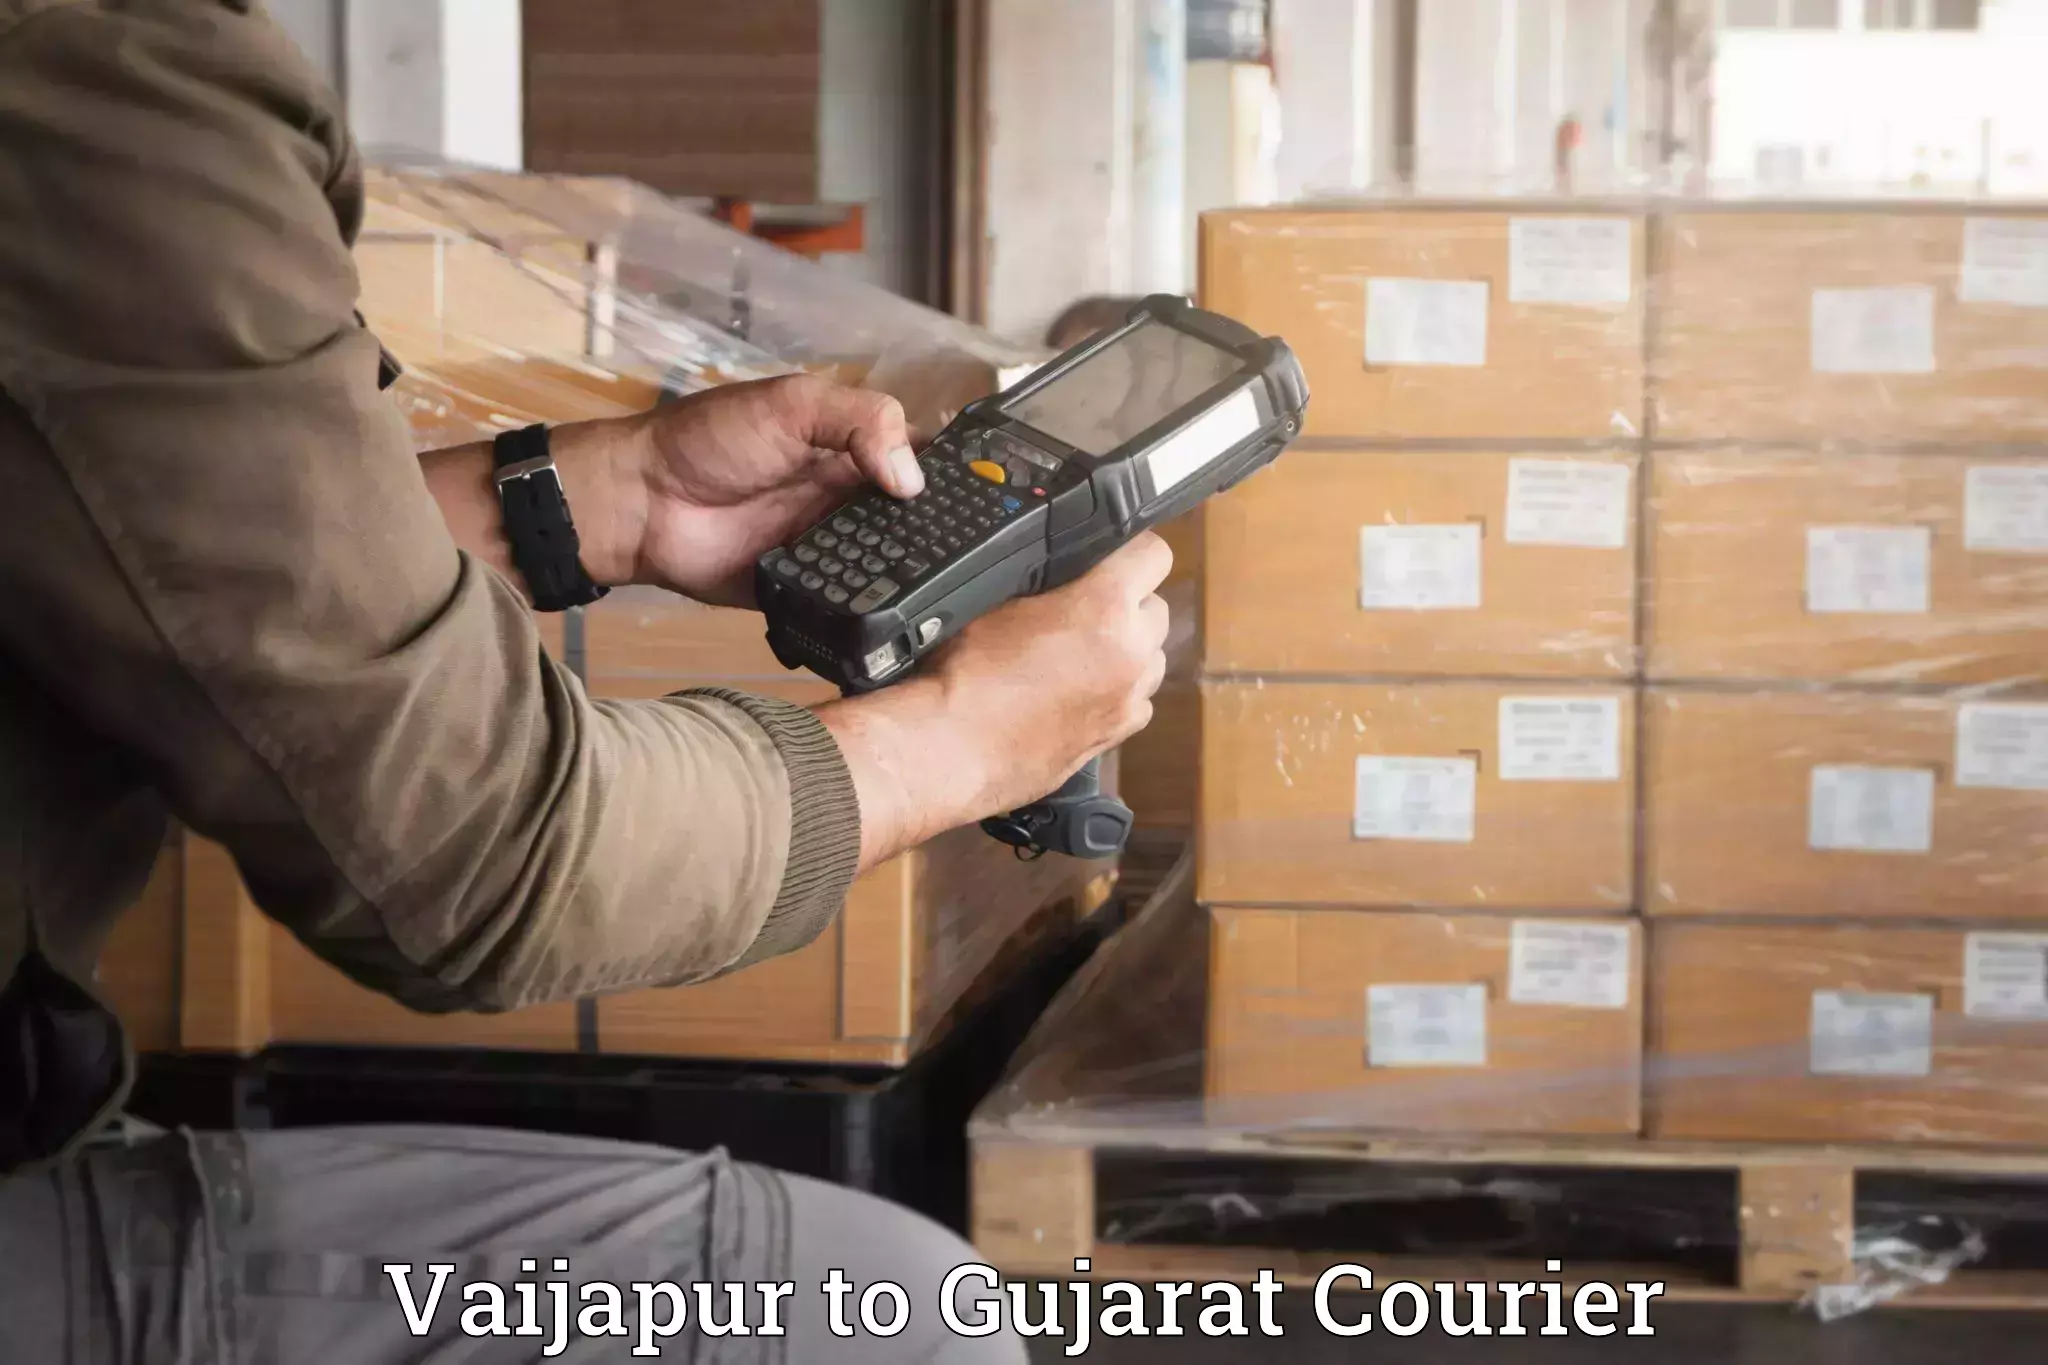 Luggage transfer service Vaijapur to Vatadara